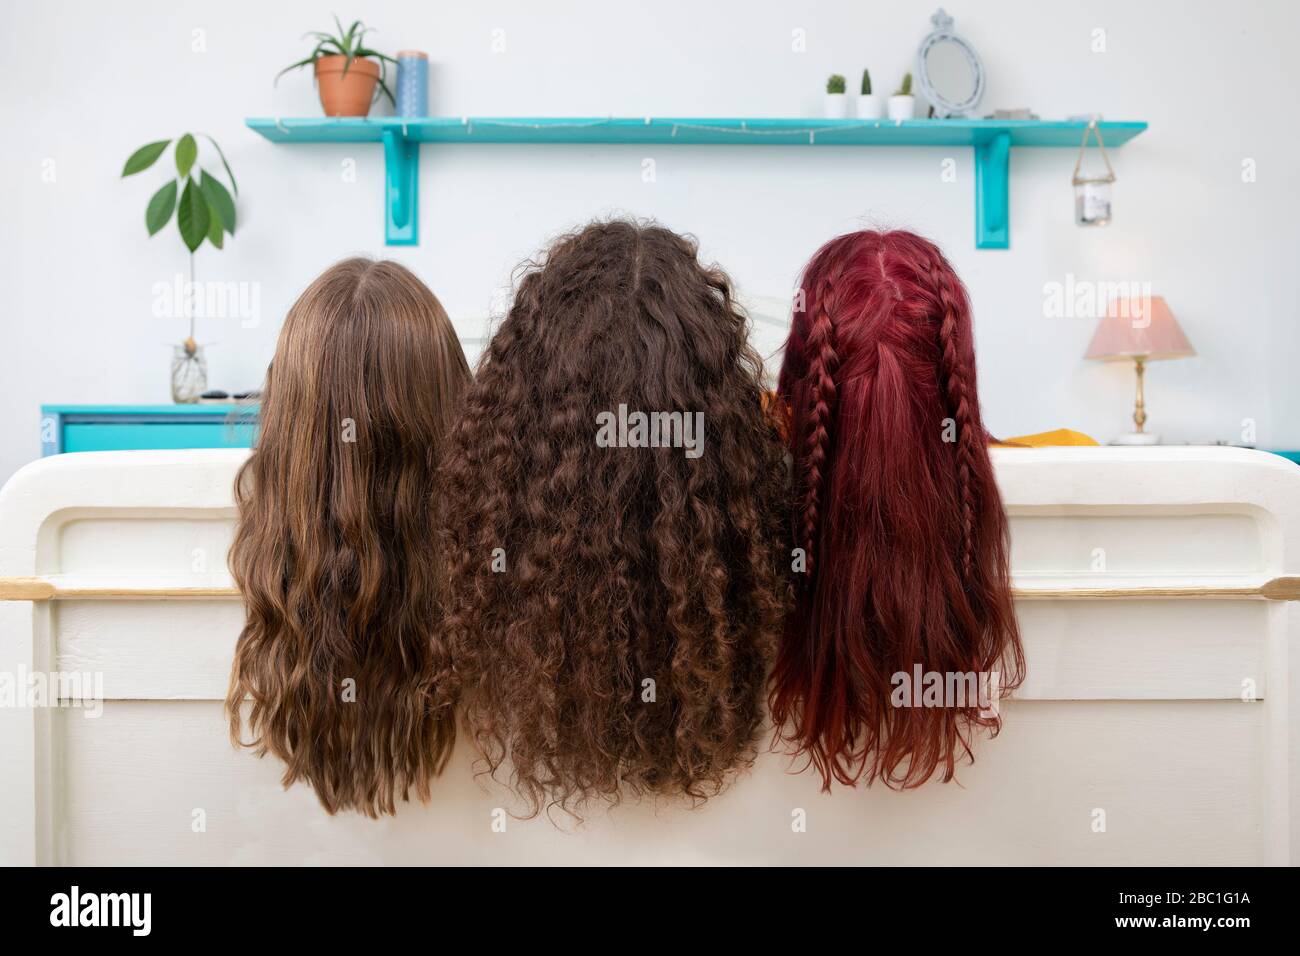 Vista posterior de tres hermanas con pelo largo Foto de stock